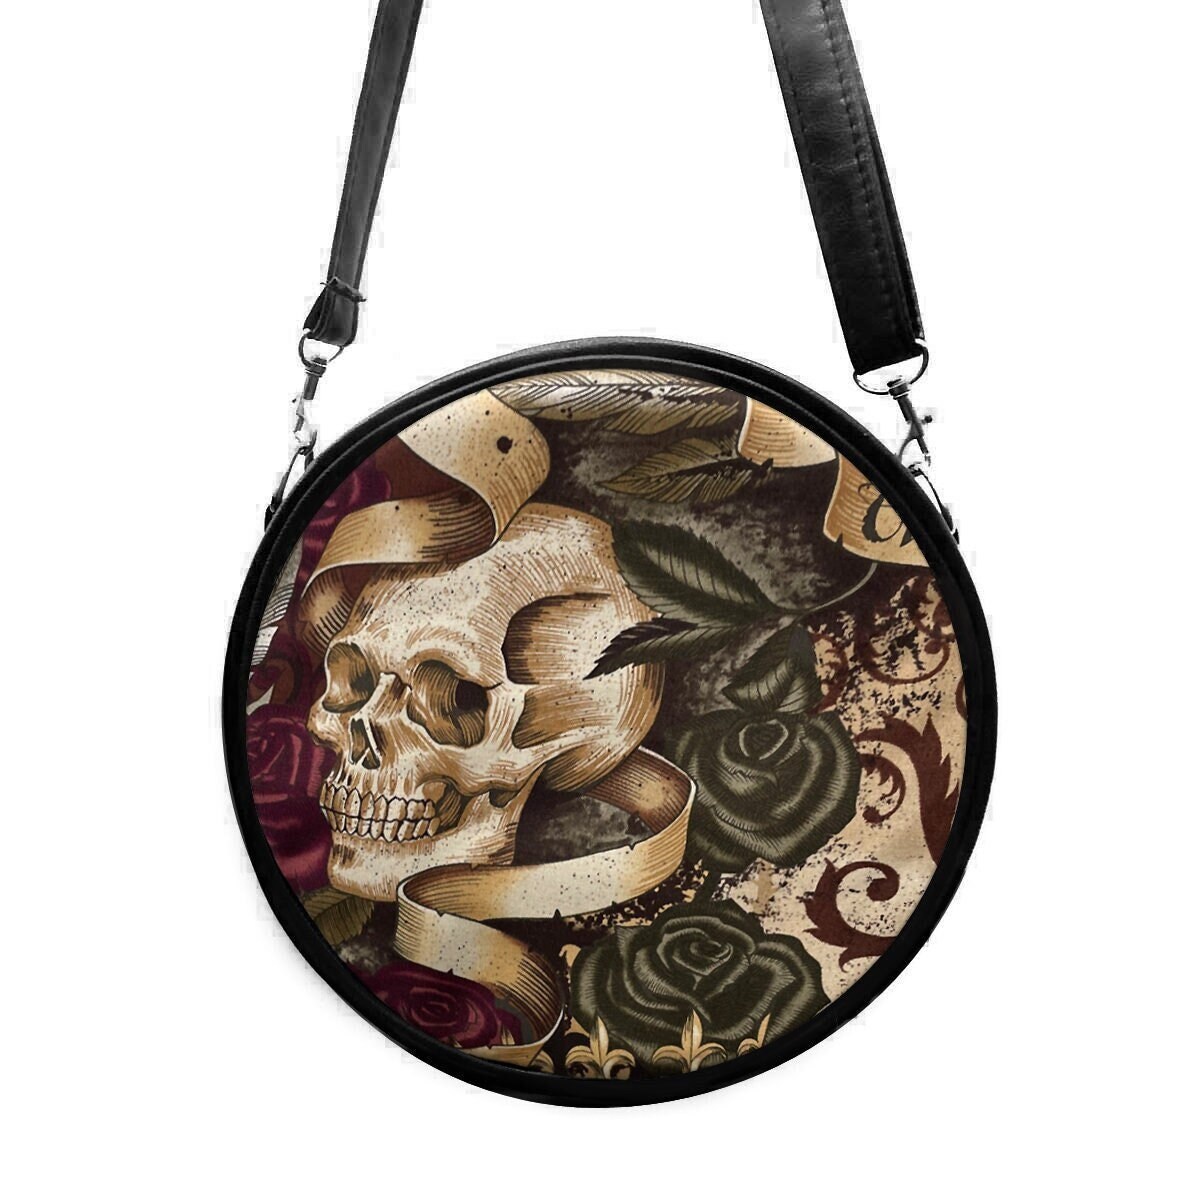 Us Handarbeit Kleine Kreis Handtasche Schultertasche Style Mit "Skulls Crown" Muster, Selten, Neu von HandmadeFashion